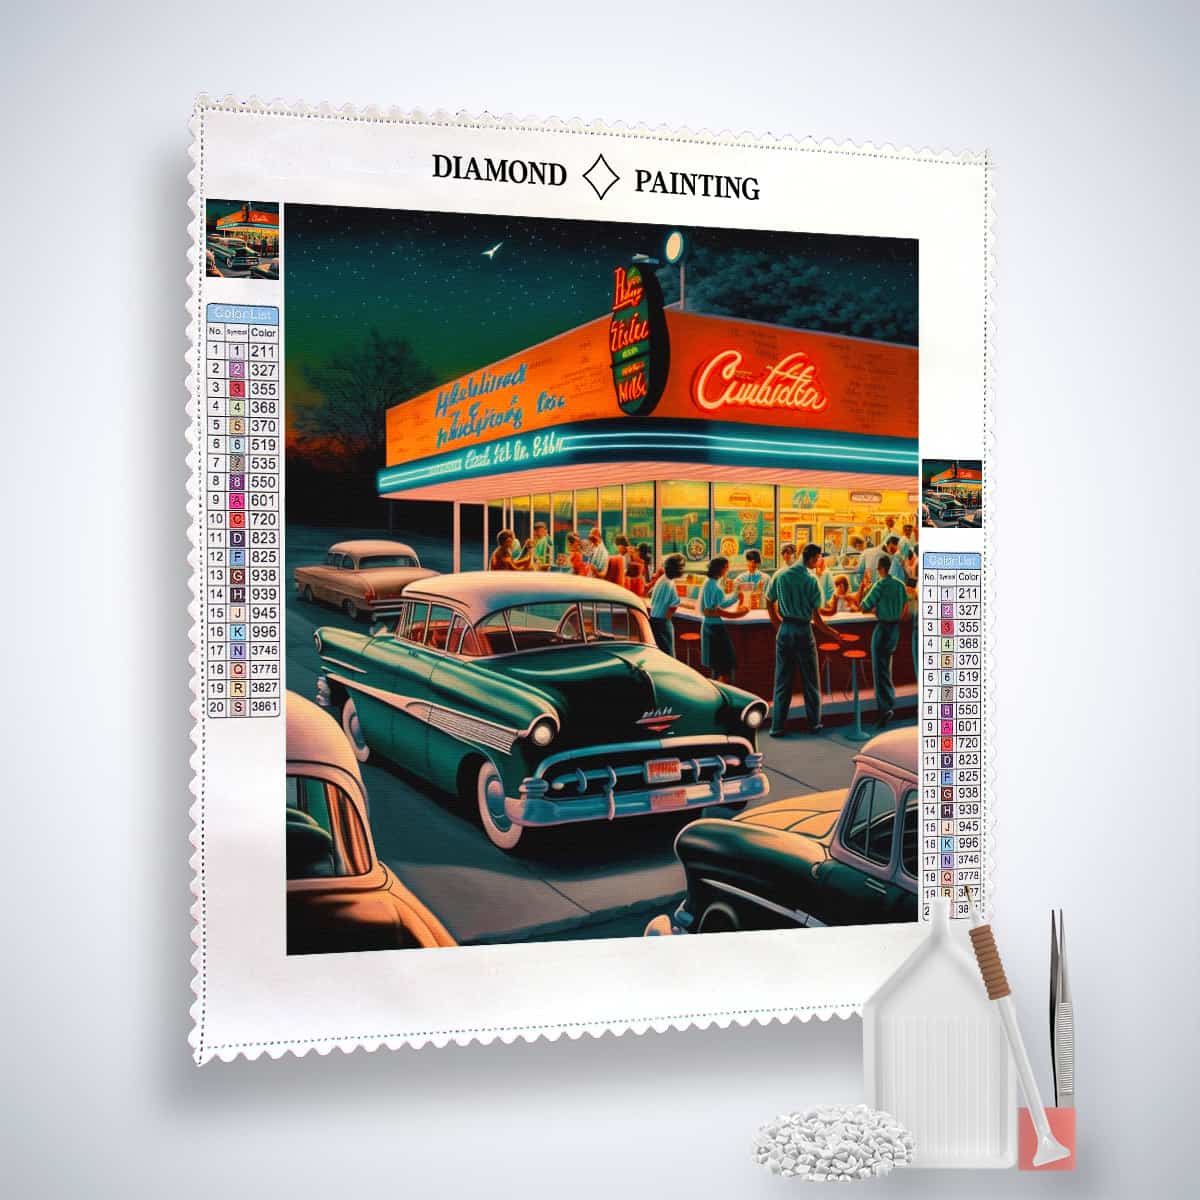 Diamond Painting - Vintage-Tankstelle und Chromjuwel - gedruckt in Ultra-HD - Auto, Neu eingetroffen, Quadratisch, Retro, Route 66